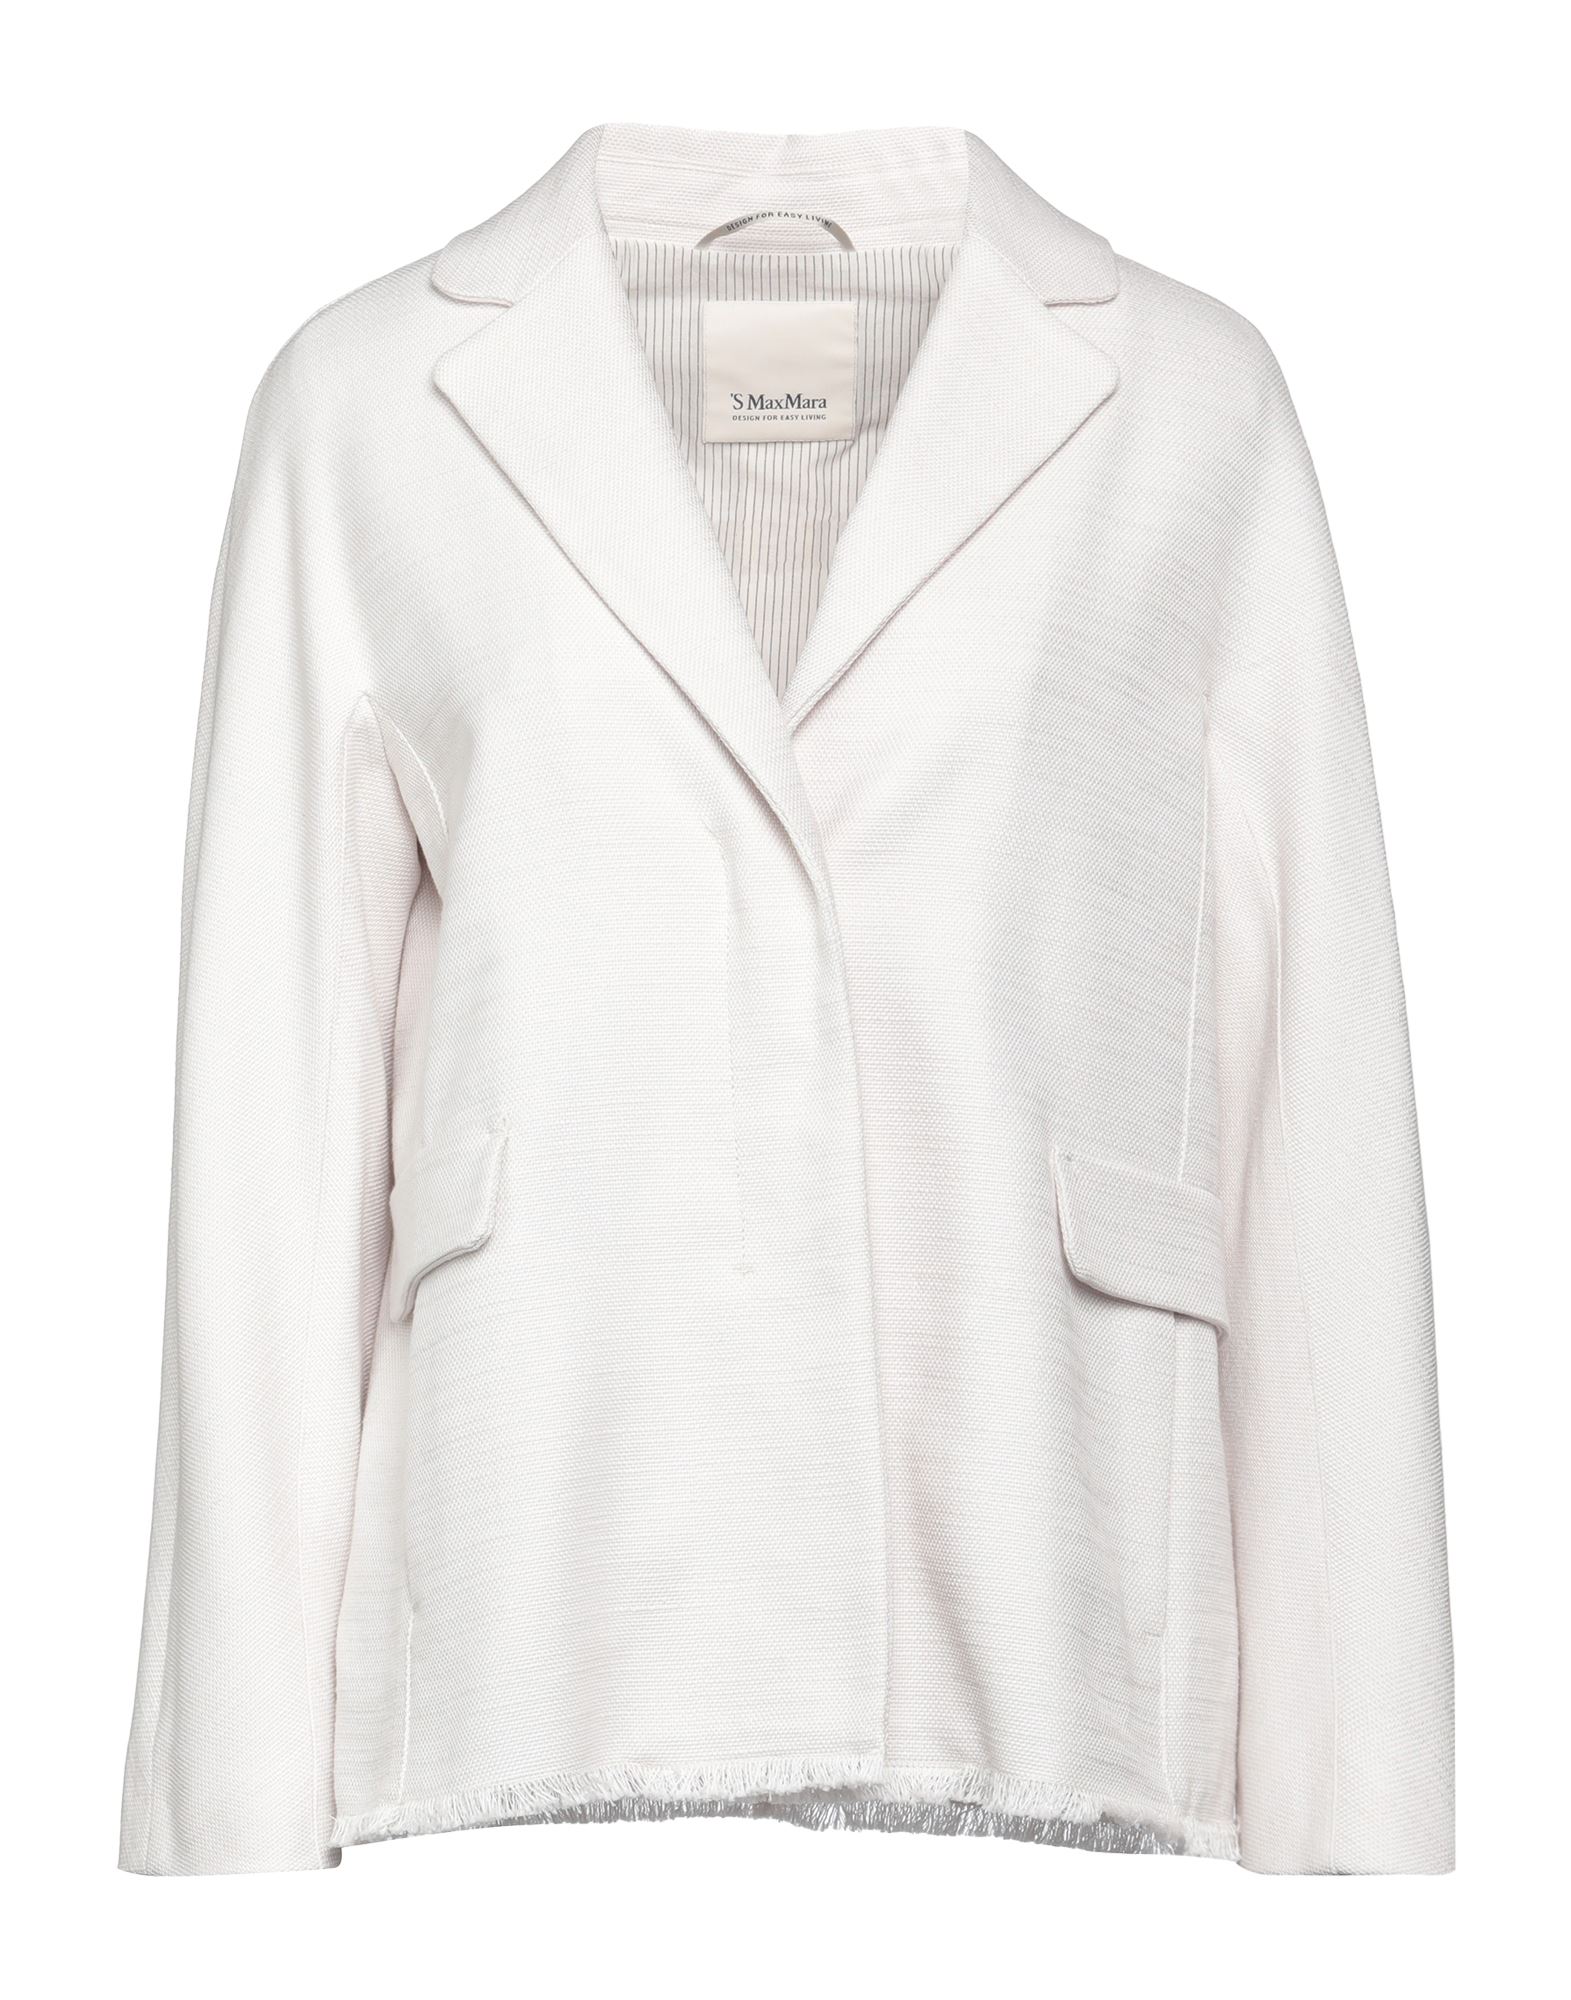 's Max Mara Woman Suit Jacket Light Grey Size 4 Cotton, Linen